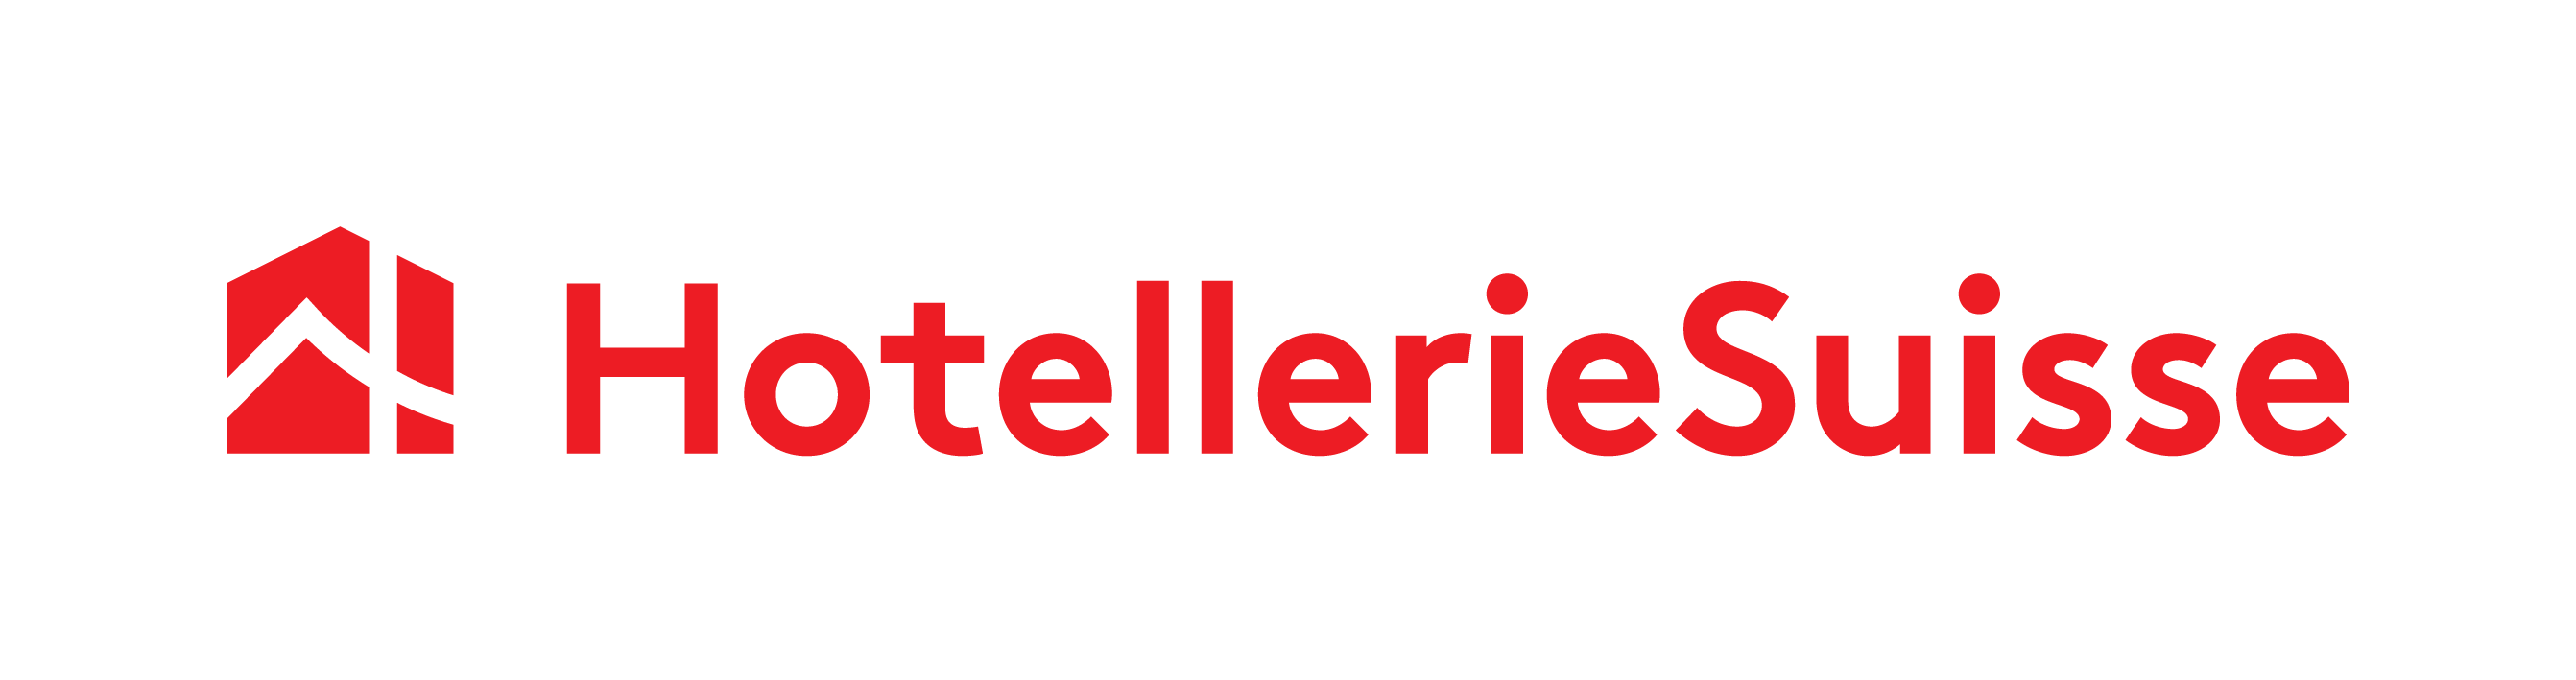 Logo_Hoteleriesuisse_dachkomitee_de